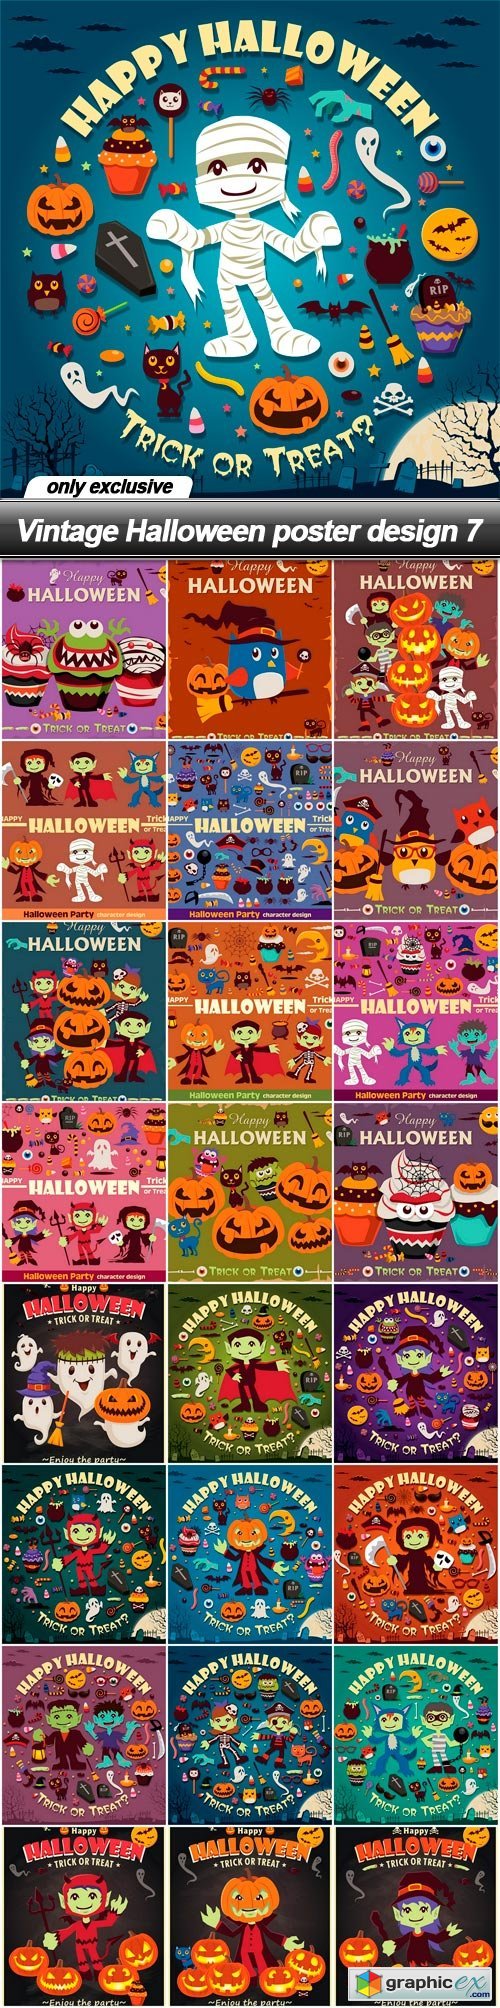 Vintage Halloween poster design 7 - 25 EPS